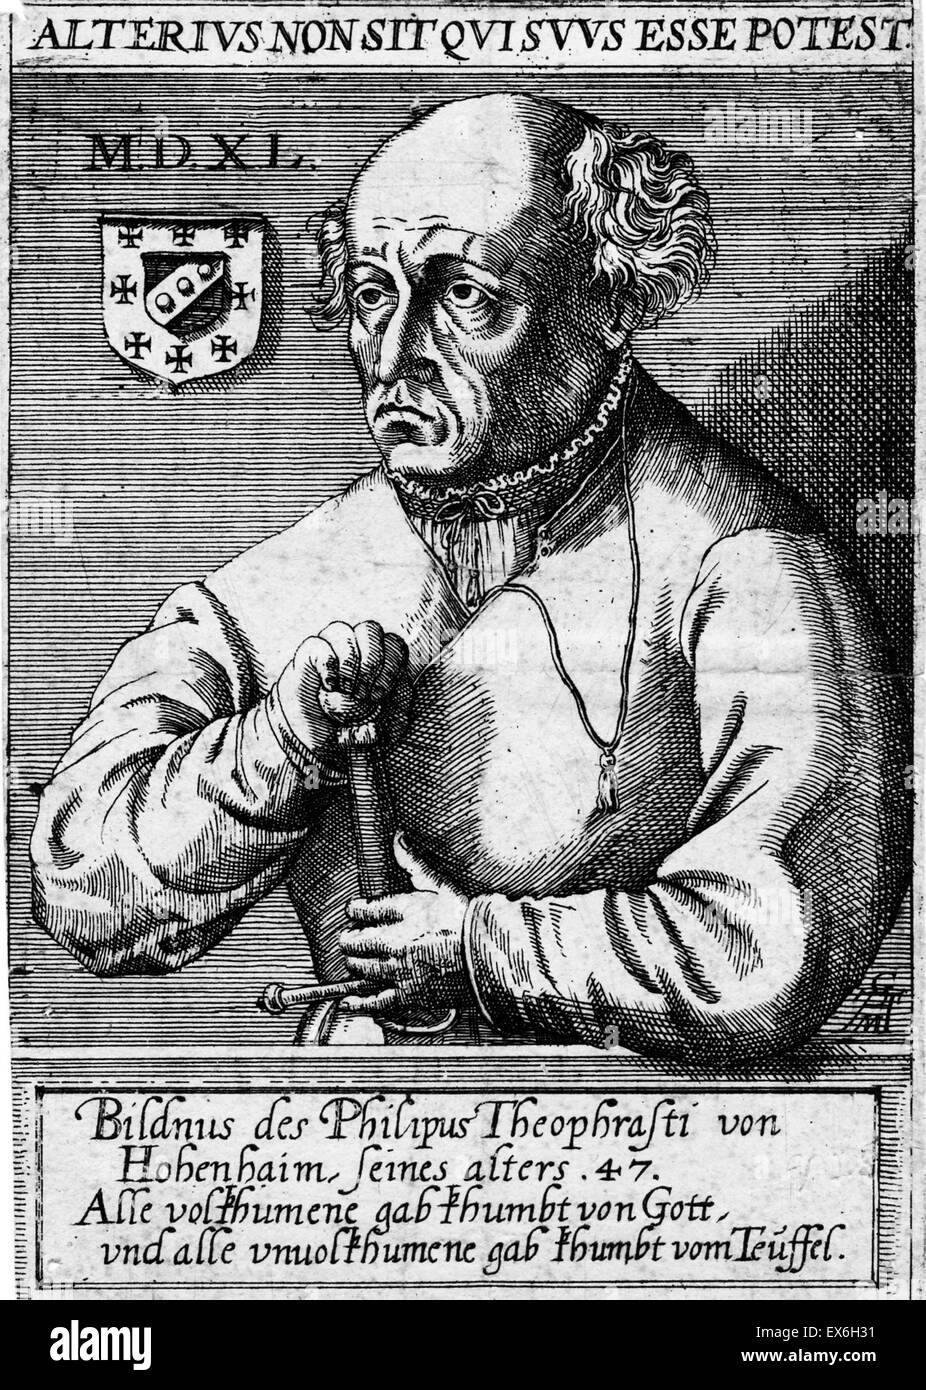 Porträt von Arzt, Botaniker, Alchemist, Astrologe und allgemeine Okkultisten Paracelsus (1493-1541) Schweizer deutschen Renaissance. Er gründete die Disziplin der Toxikologie. Halbfigur mit Blick auf der linken Seite. In seinen Händen hält er ein Schwert. Es ist ein Schild, ich Stockfoto